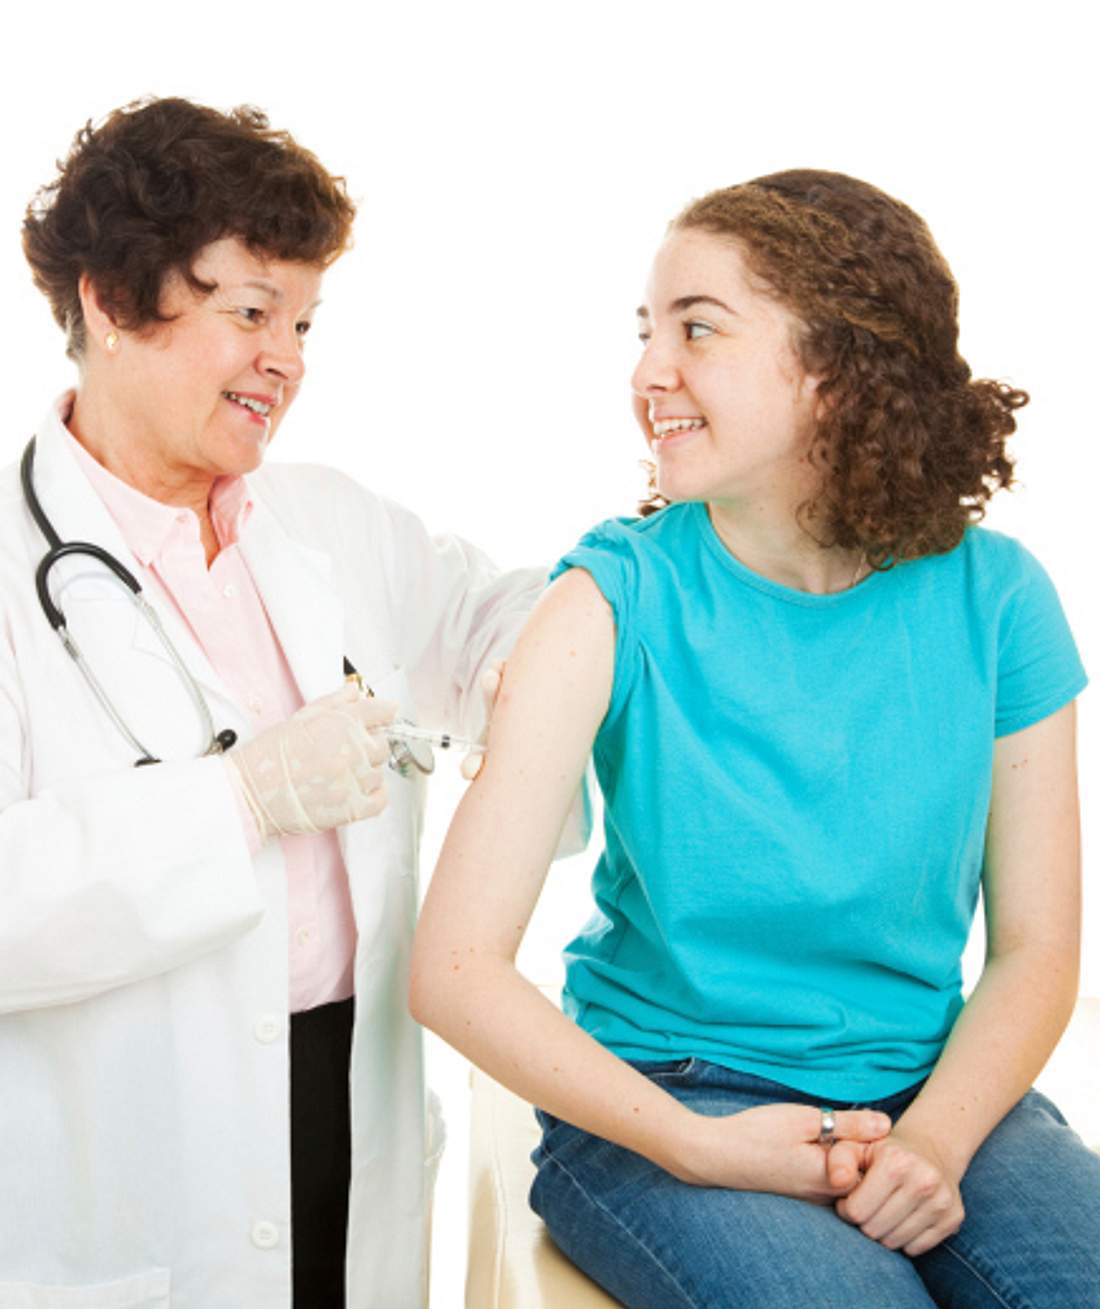 Untersuchung für HPV-Impfung?